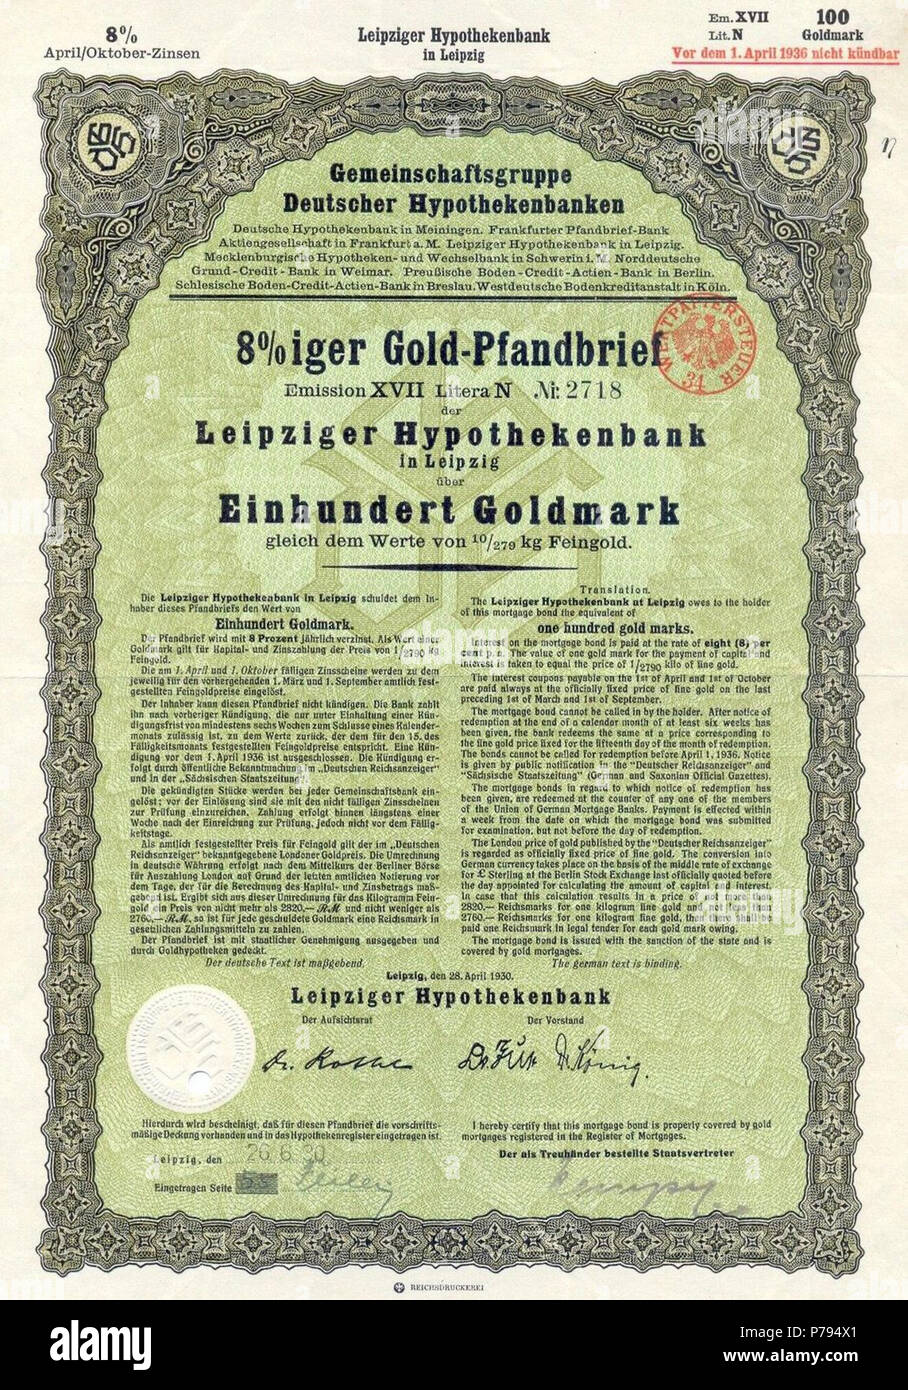 Pfandbrief der Leipziger Hypothekenbank über 100 Goldmark mit Unterschrift von Karl Rothe als Aufsichtsrat . 1930 6 Pfandbrief Leipziger Hypothekenbank Stock Photo